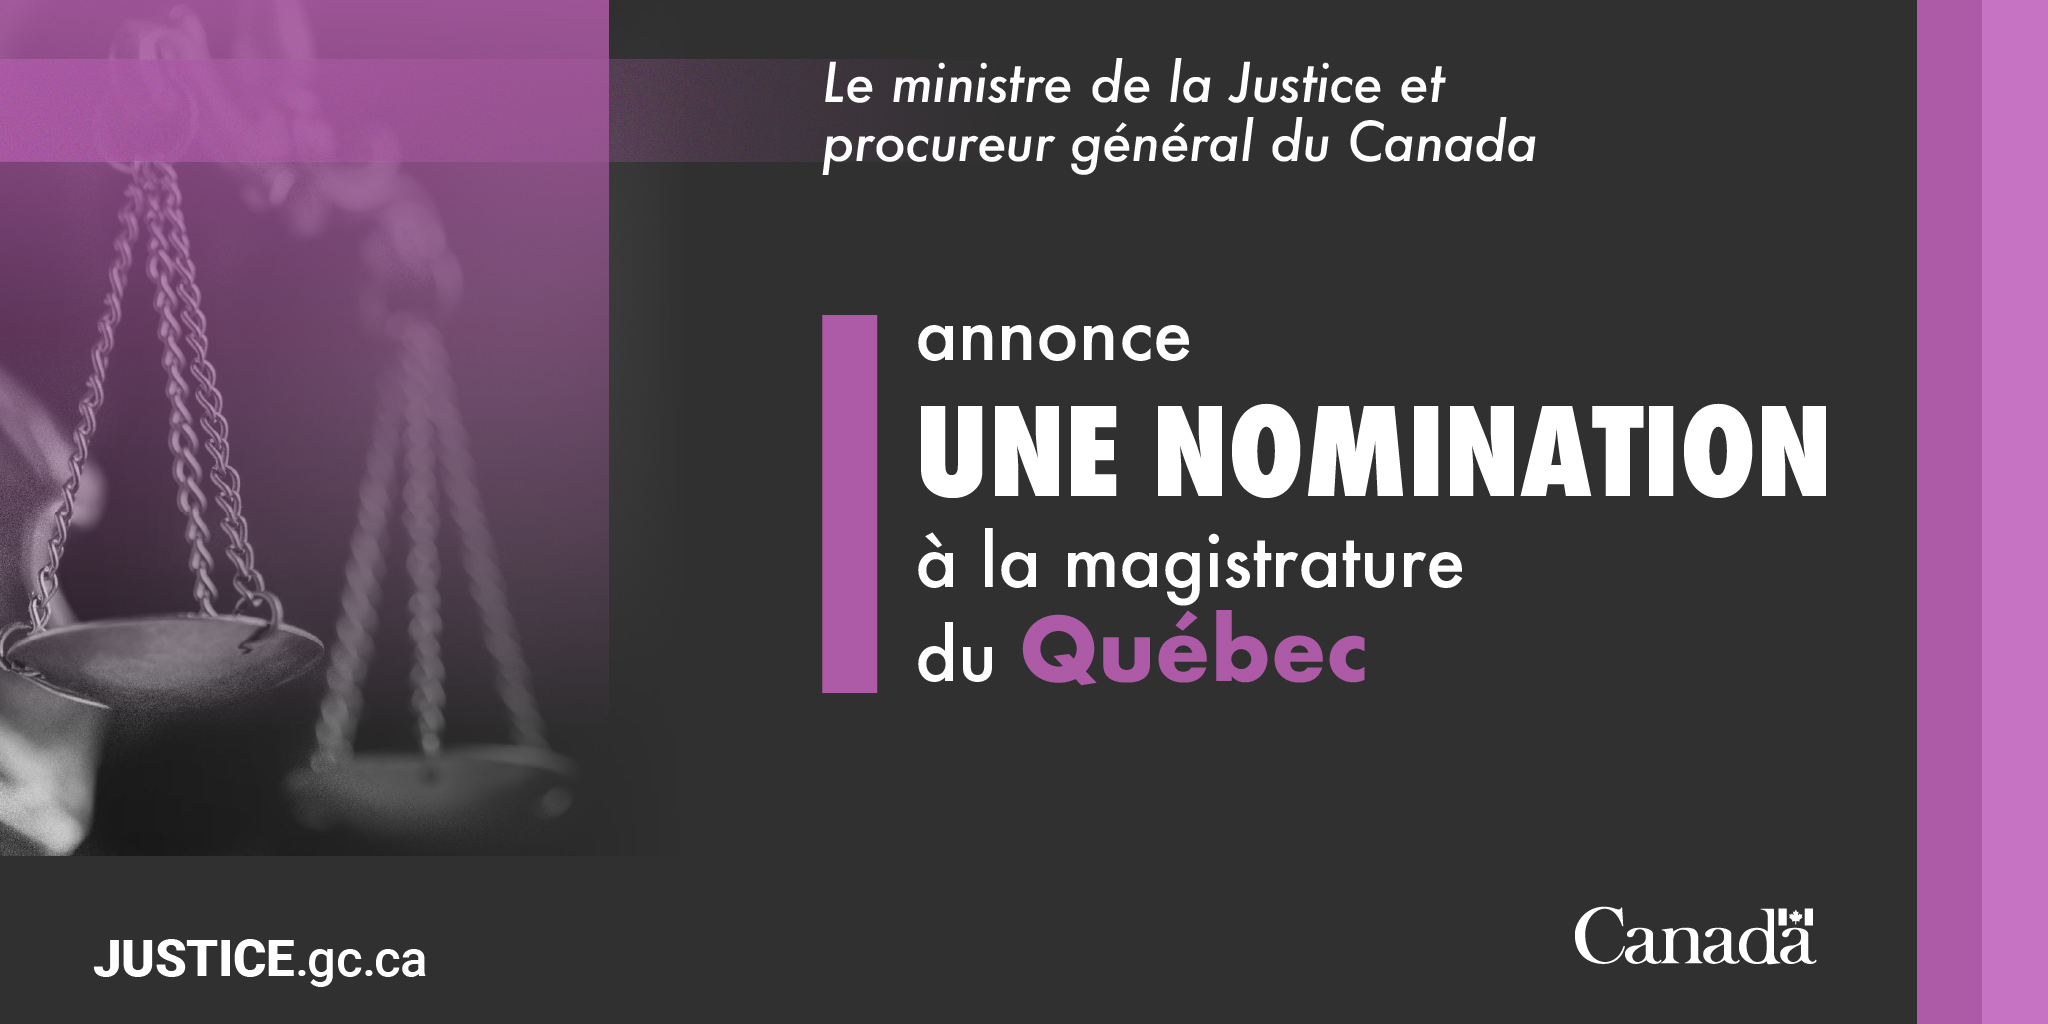 Le ministre de la Justice et procureur général du Canada annonce une nomination à la magistrature du Québec - Canada.ca